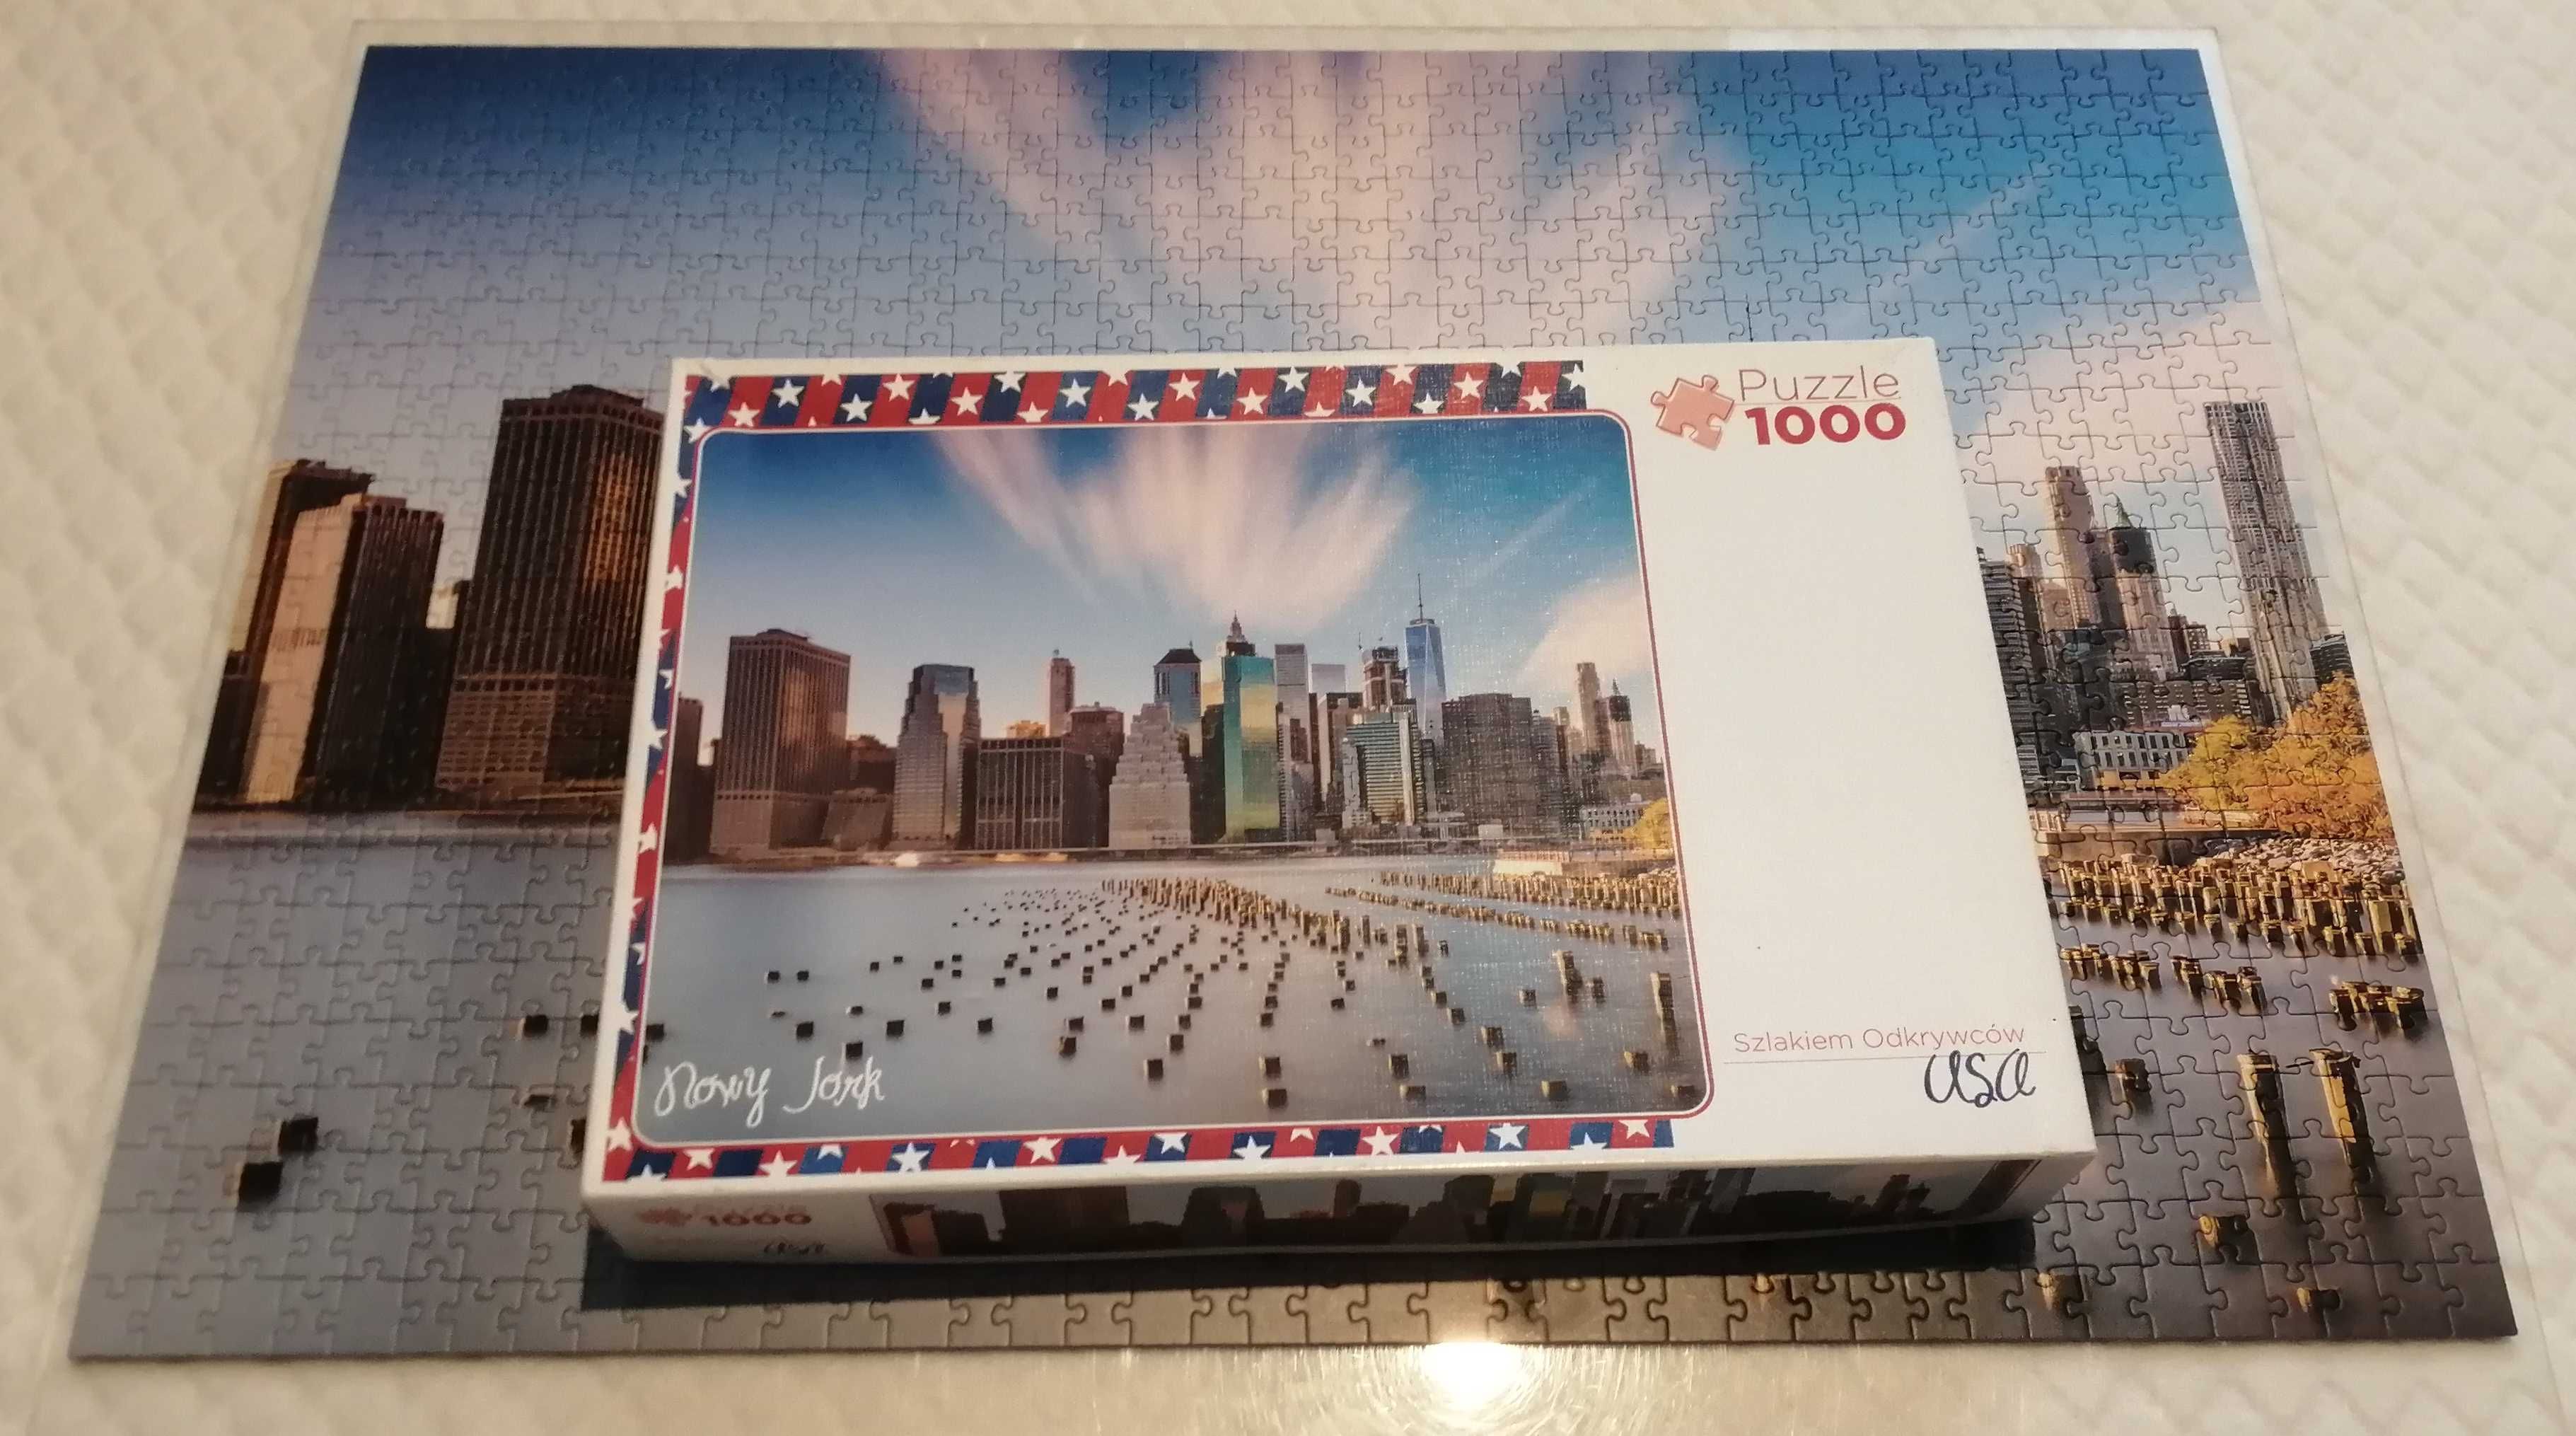 Szlakiem odkrywców USA. Nowy Jork. 91502, Trefl, 1000 (Puzzle)